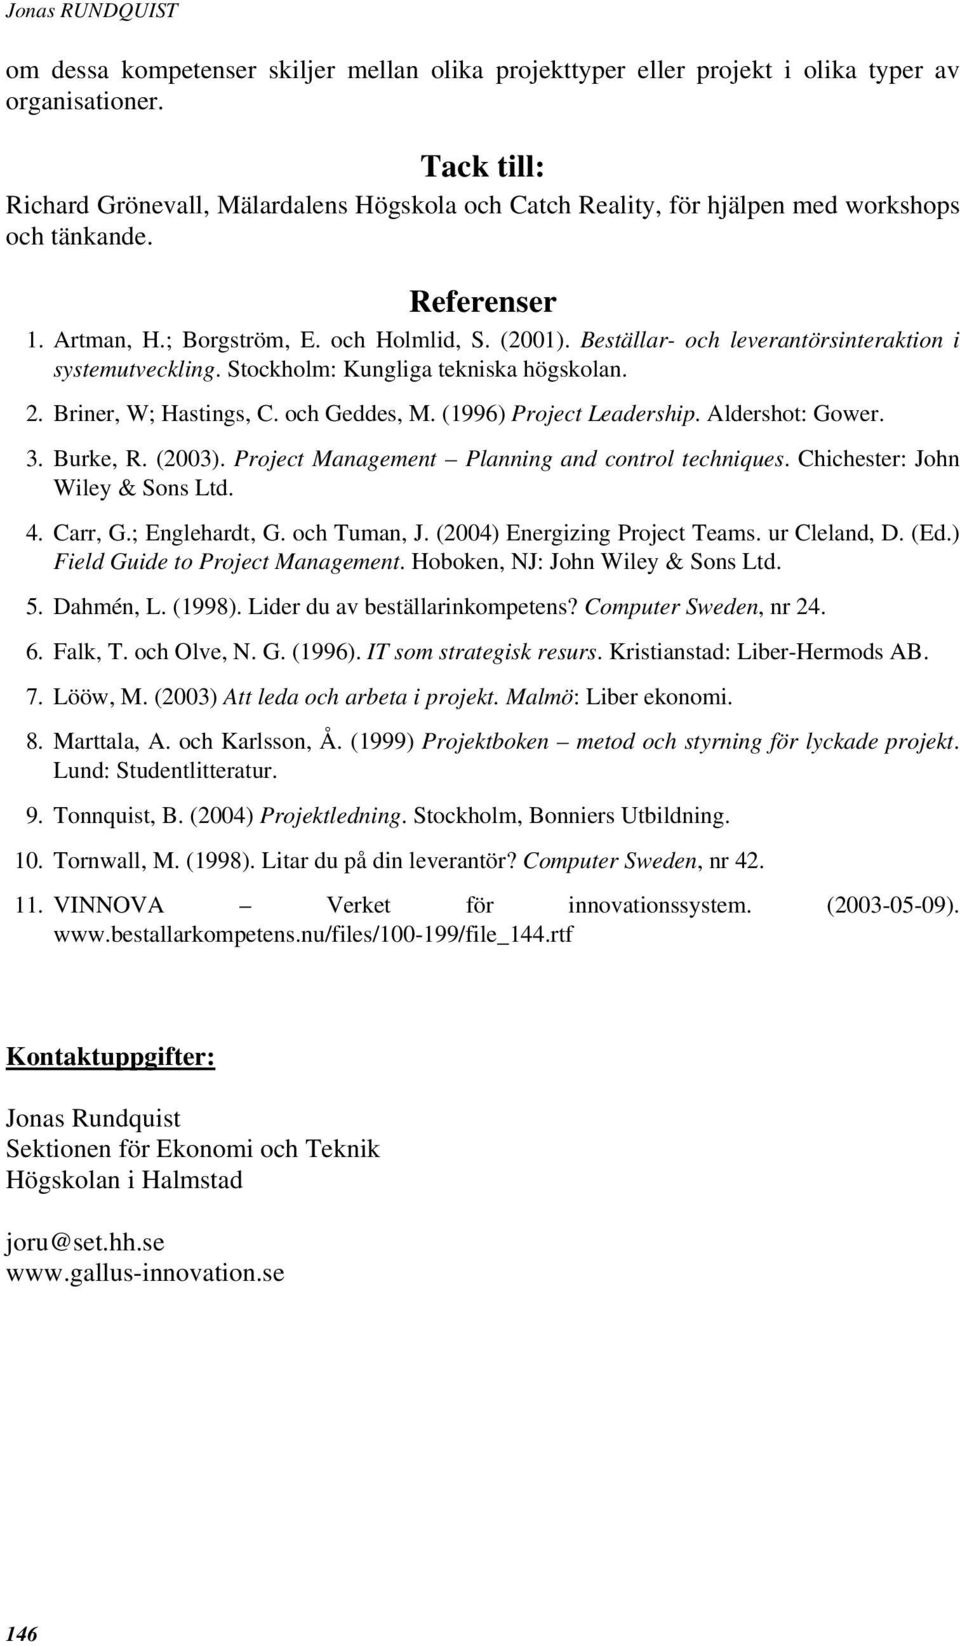 Beställar- och leverantörsinteraktion i systemutveckling. Stockholm: Kungliga tekniska högskolan. 2. Briner, W; Hastings, C. och Geddes, M. (1996) Project Leadership. Aldershot: Gower. 3. Burke, R.